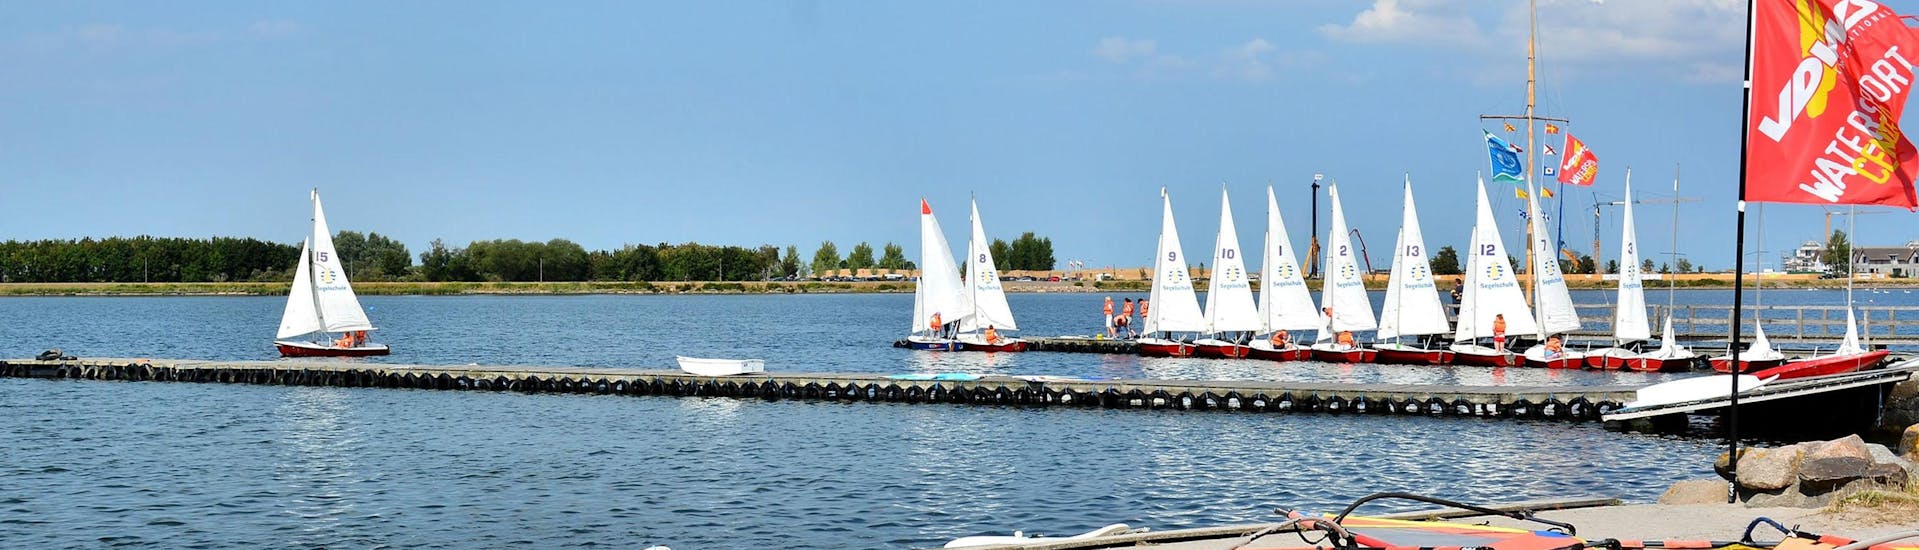 Ein Blick auf den See während des Windsurfingkurses "SAC Step Pro" - Heiligenhafen mit dem Wassersportcenter Heiligenhafen.